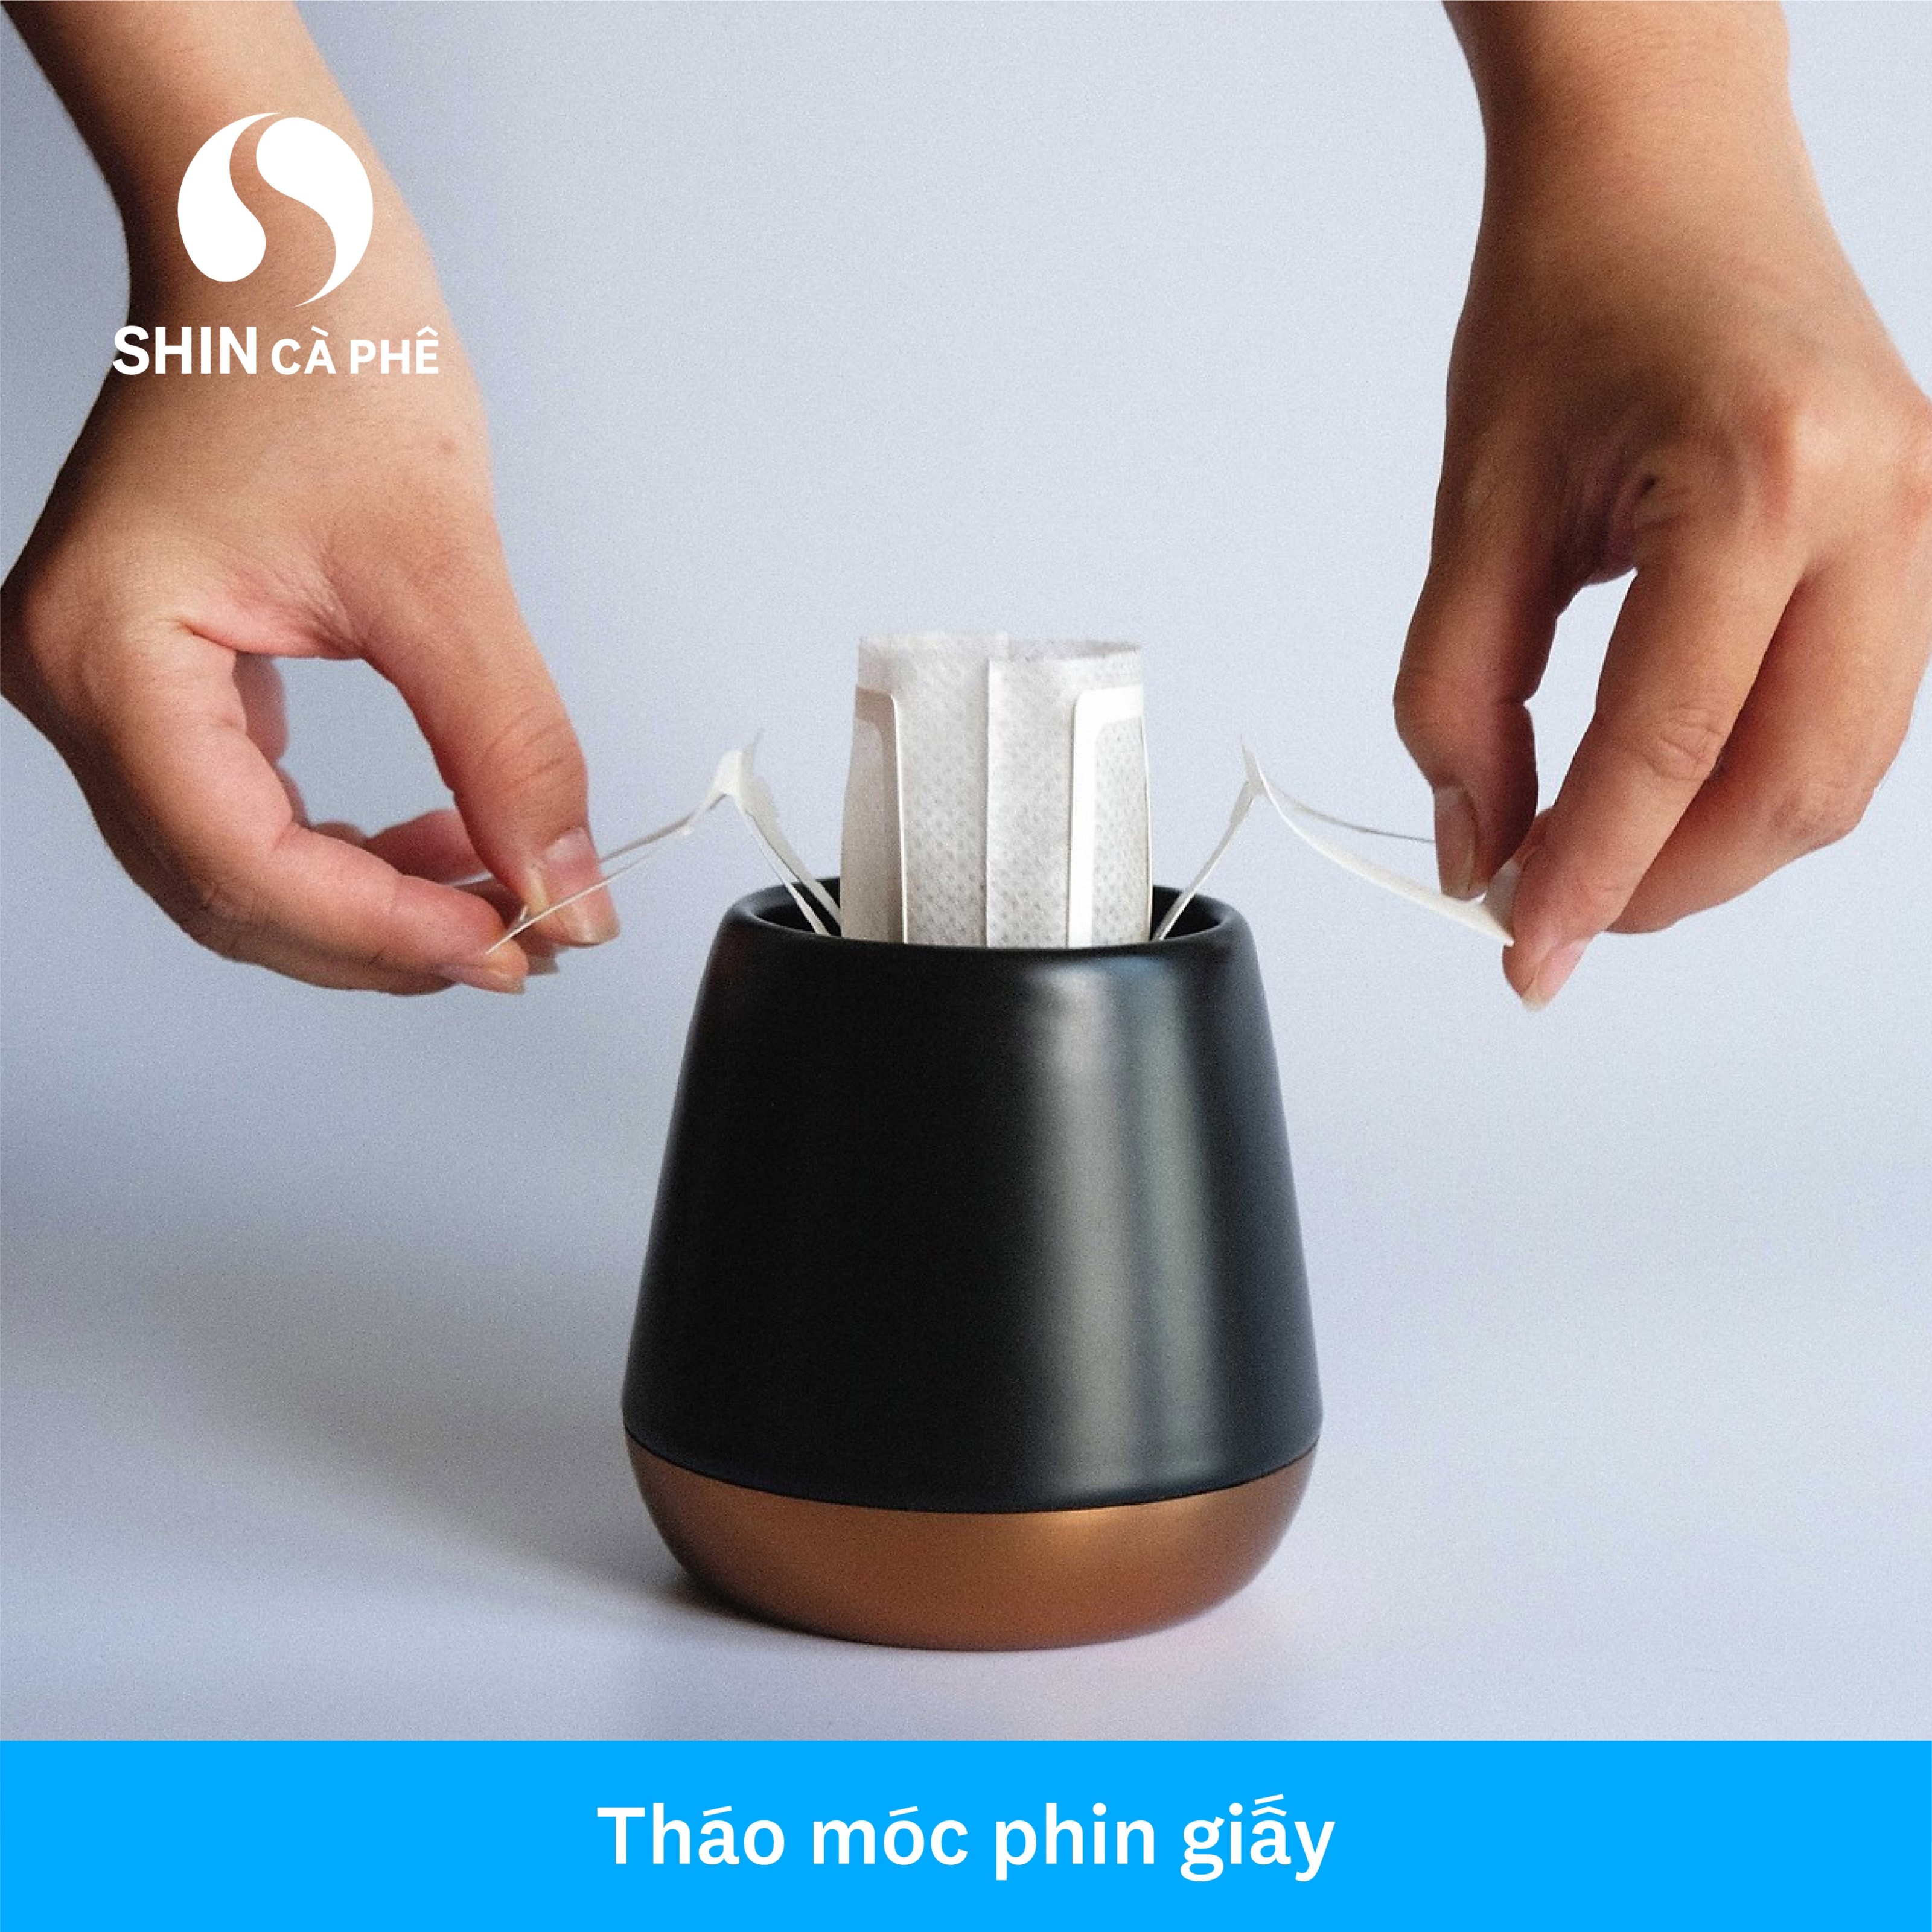 SHIN Cà Phê - DripBag Khe Sanh Blend hộp 10 gói - Phin Giấy tiện lợi